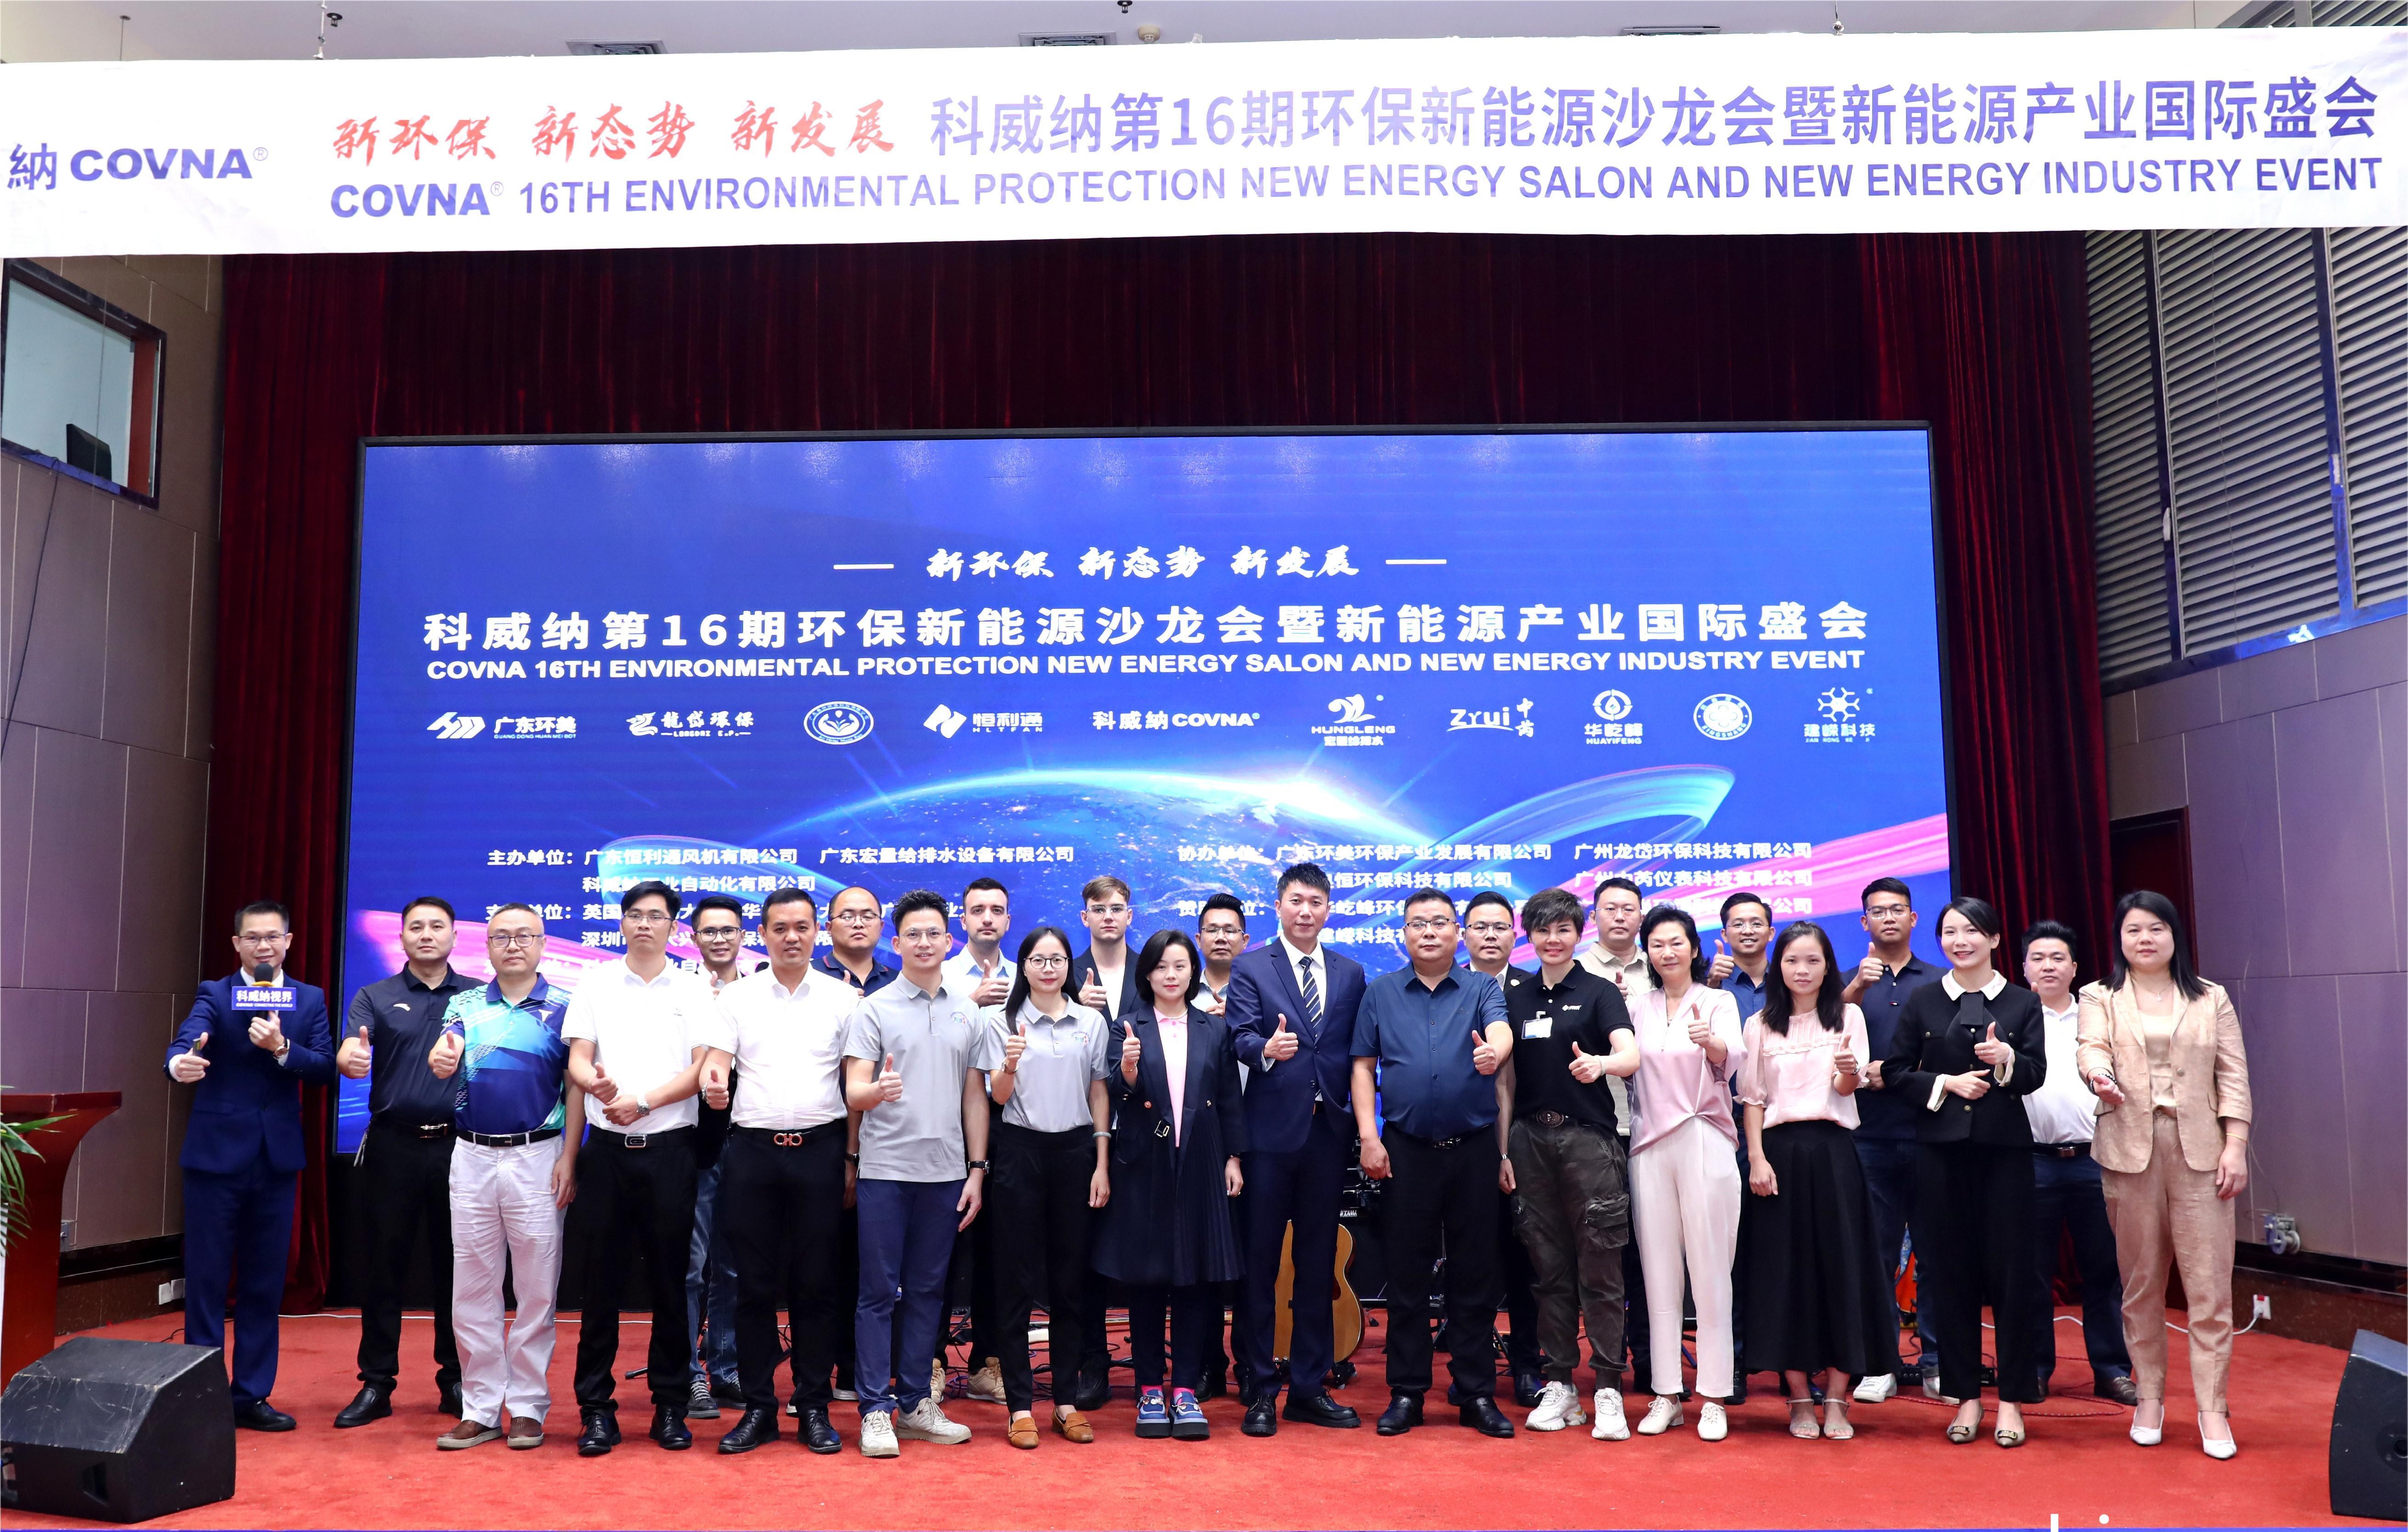 Η COVNA STARK πραγματοποίησε με επιτυχία το Συνέδριο Βιομηχανίας Προστασίας του Περιβάλλοντος και Εξοικονόμησης Ενέργειας στο Guangzhou